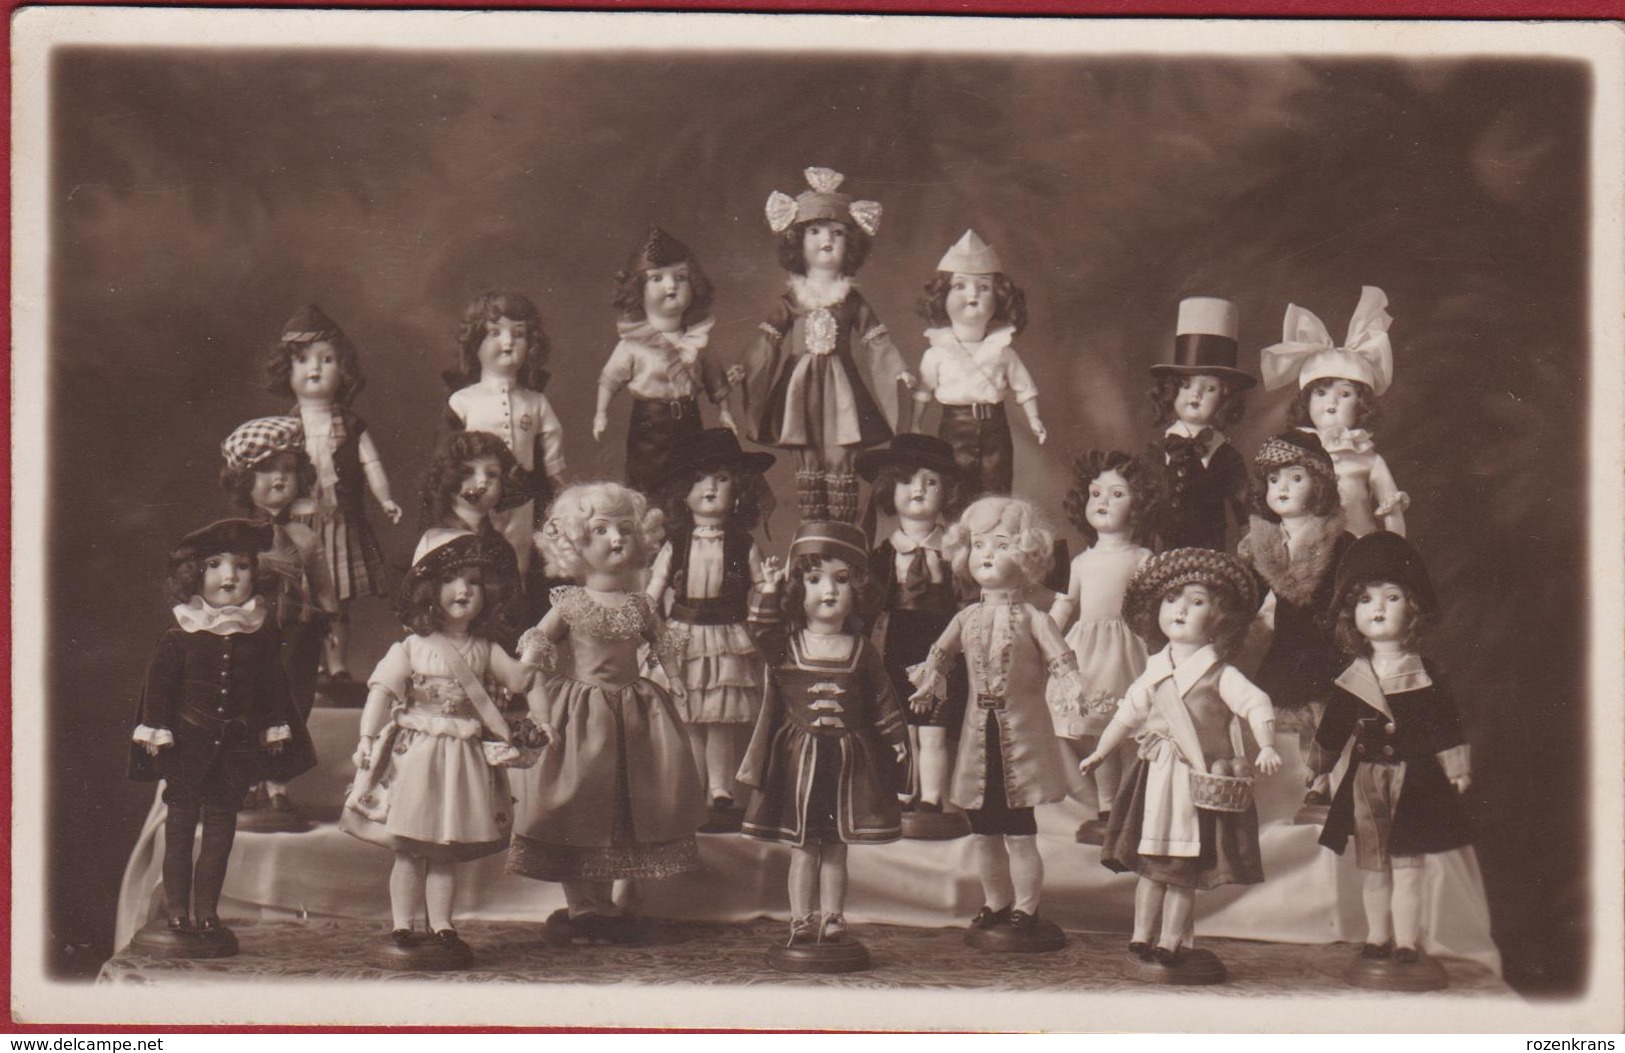 Oude Foto Originele Fotokaart MogelijkVermoedelijk Poppententoonstelling 1934 Antwerpen J. Bulens Merxem Pop Doll Poupee - Historische Documenten